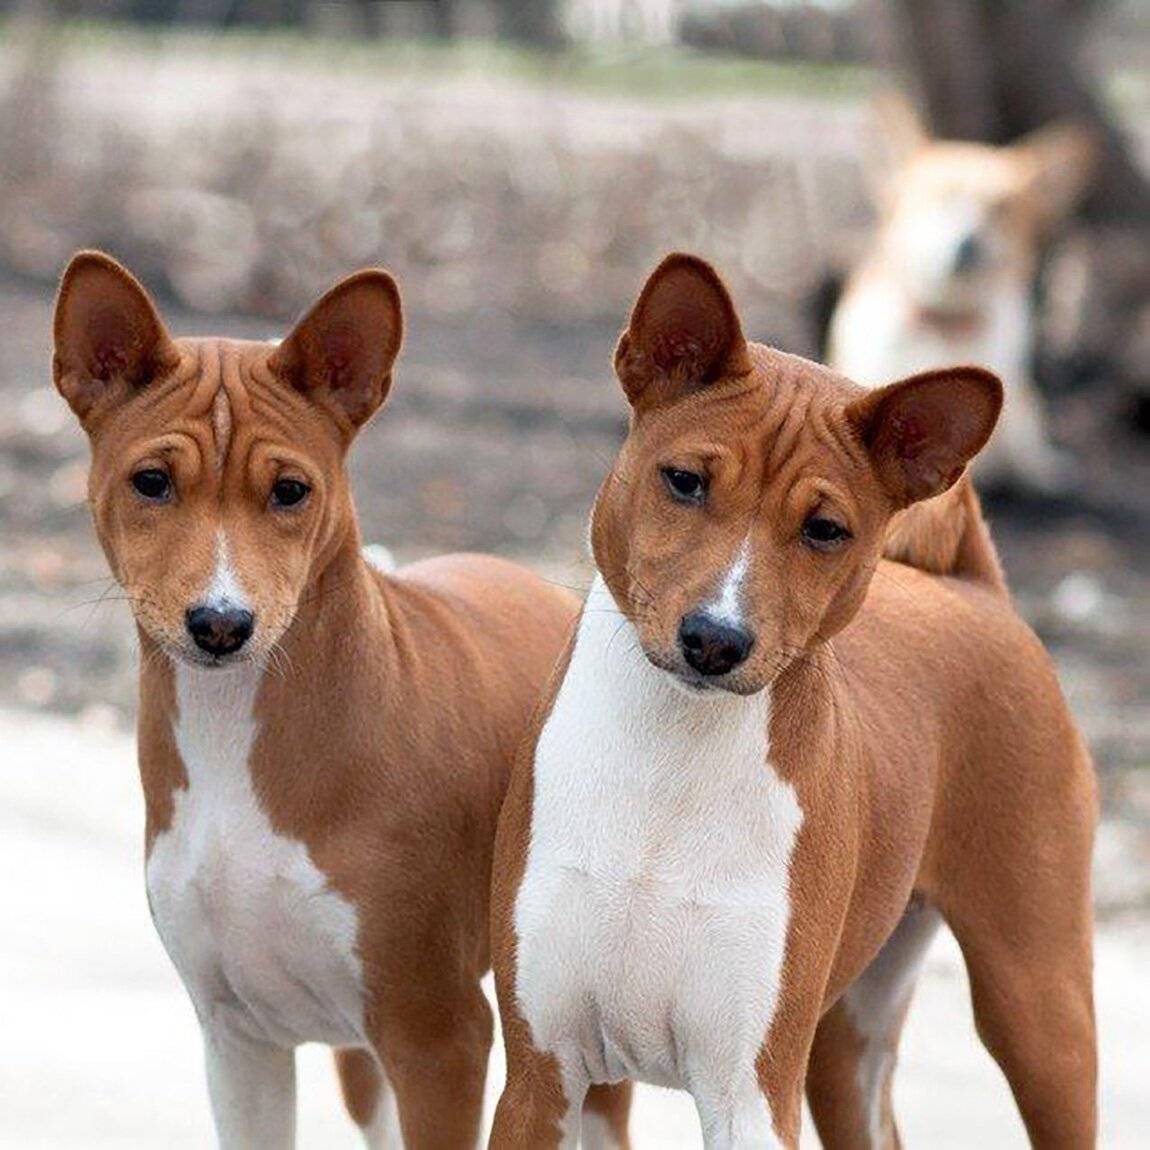 Лучшие тихие породы собак, которые меньше лают | hidogs.ru - породы собак, фото и описание